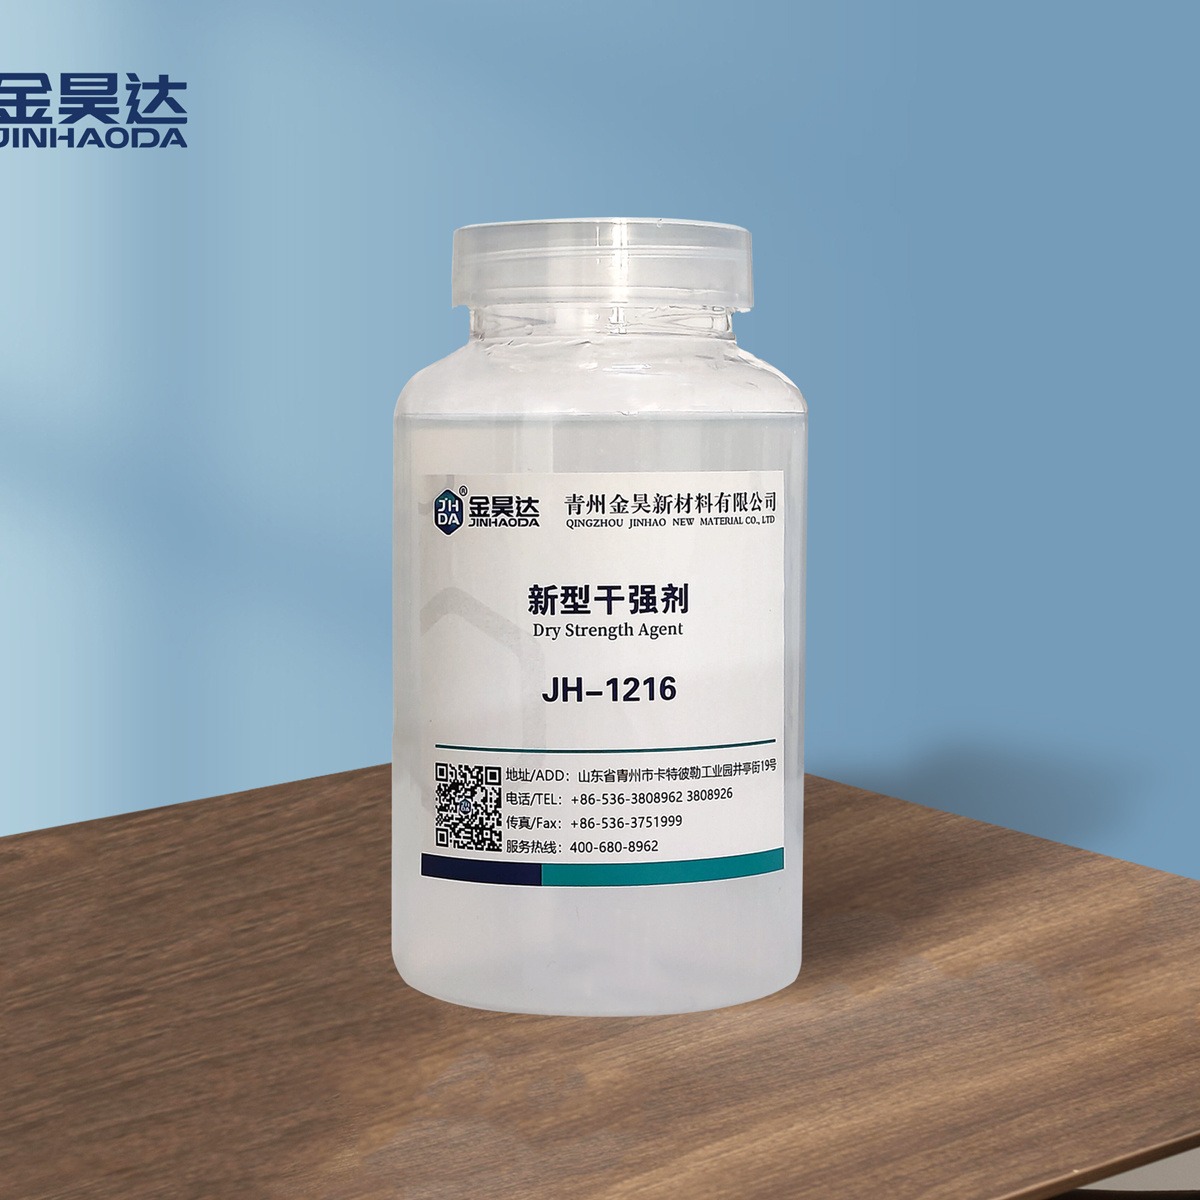 金昊JH-1216新型纸张干强剂 抗水助剂 有效提高纤维间的结合强度图片